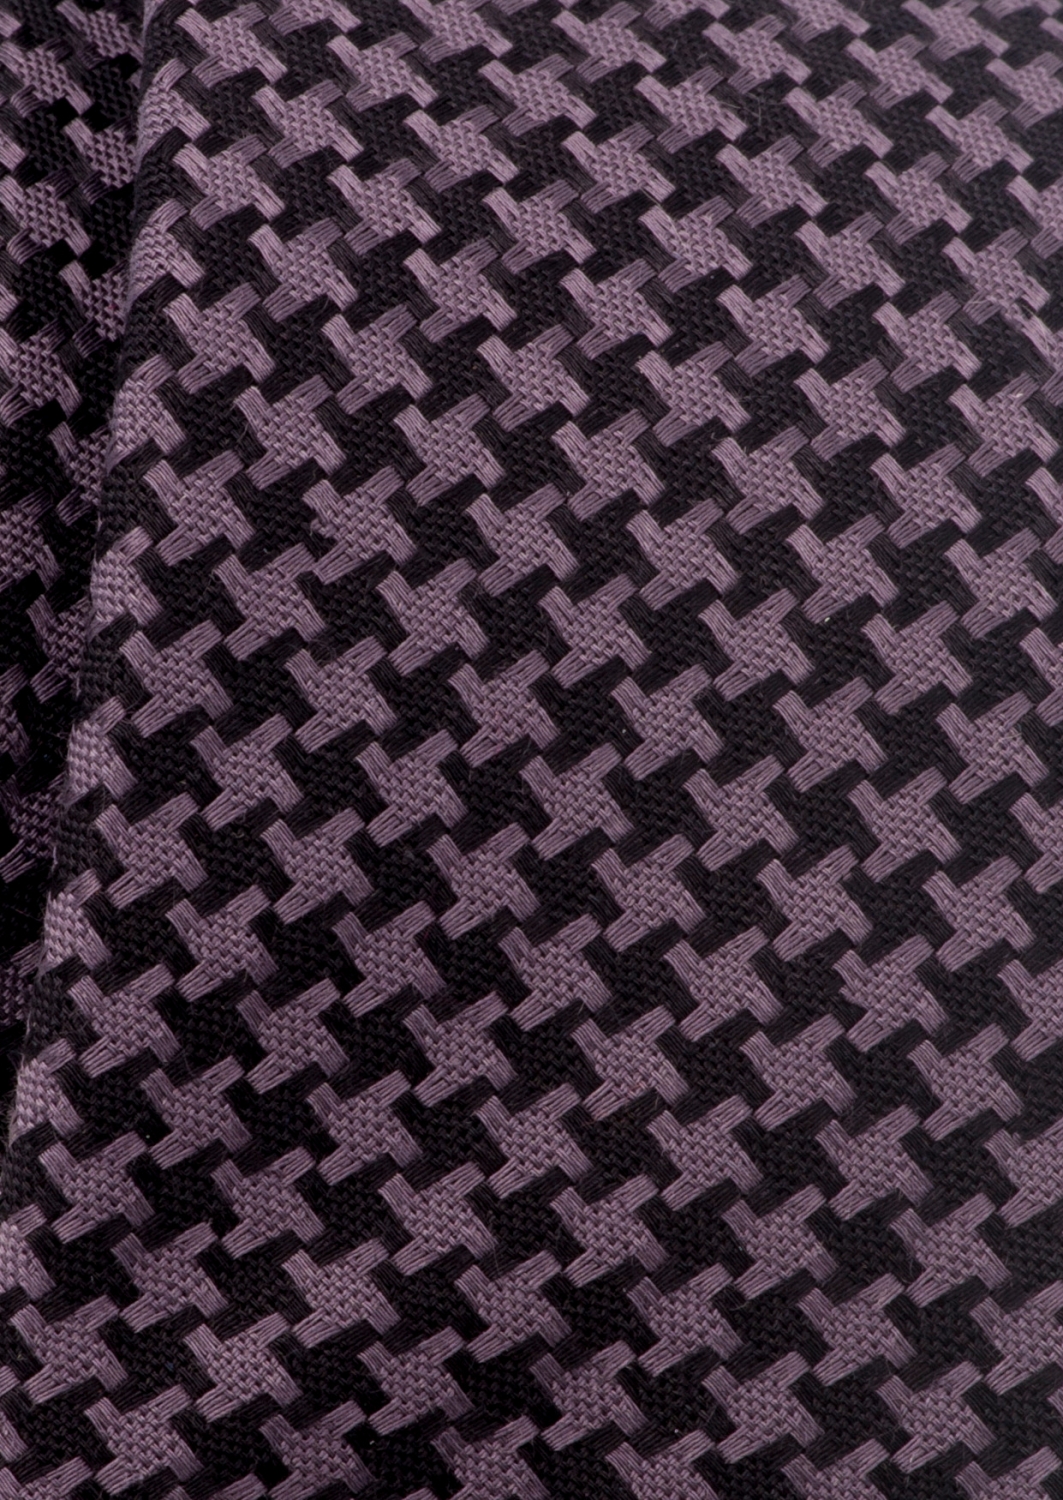 Eterna Krawatte 9815 kaufen online